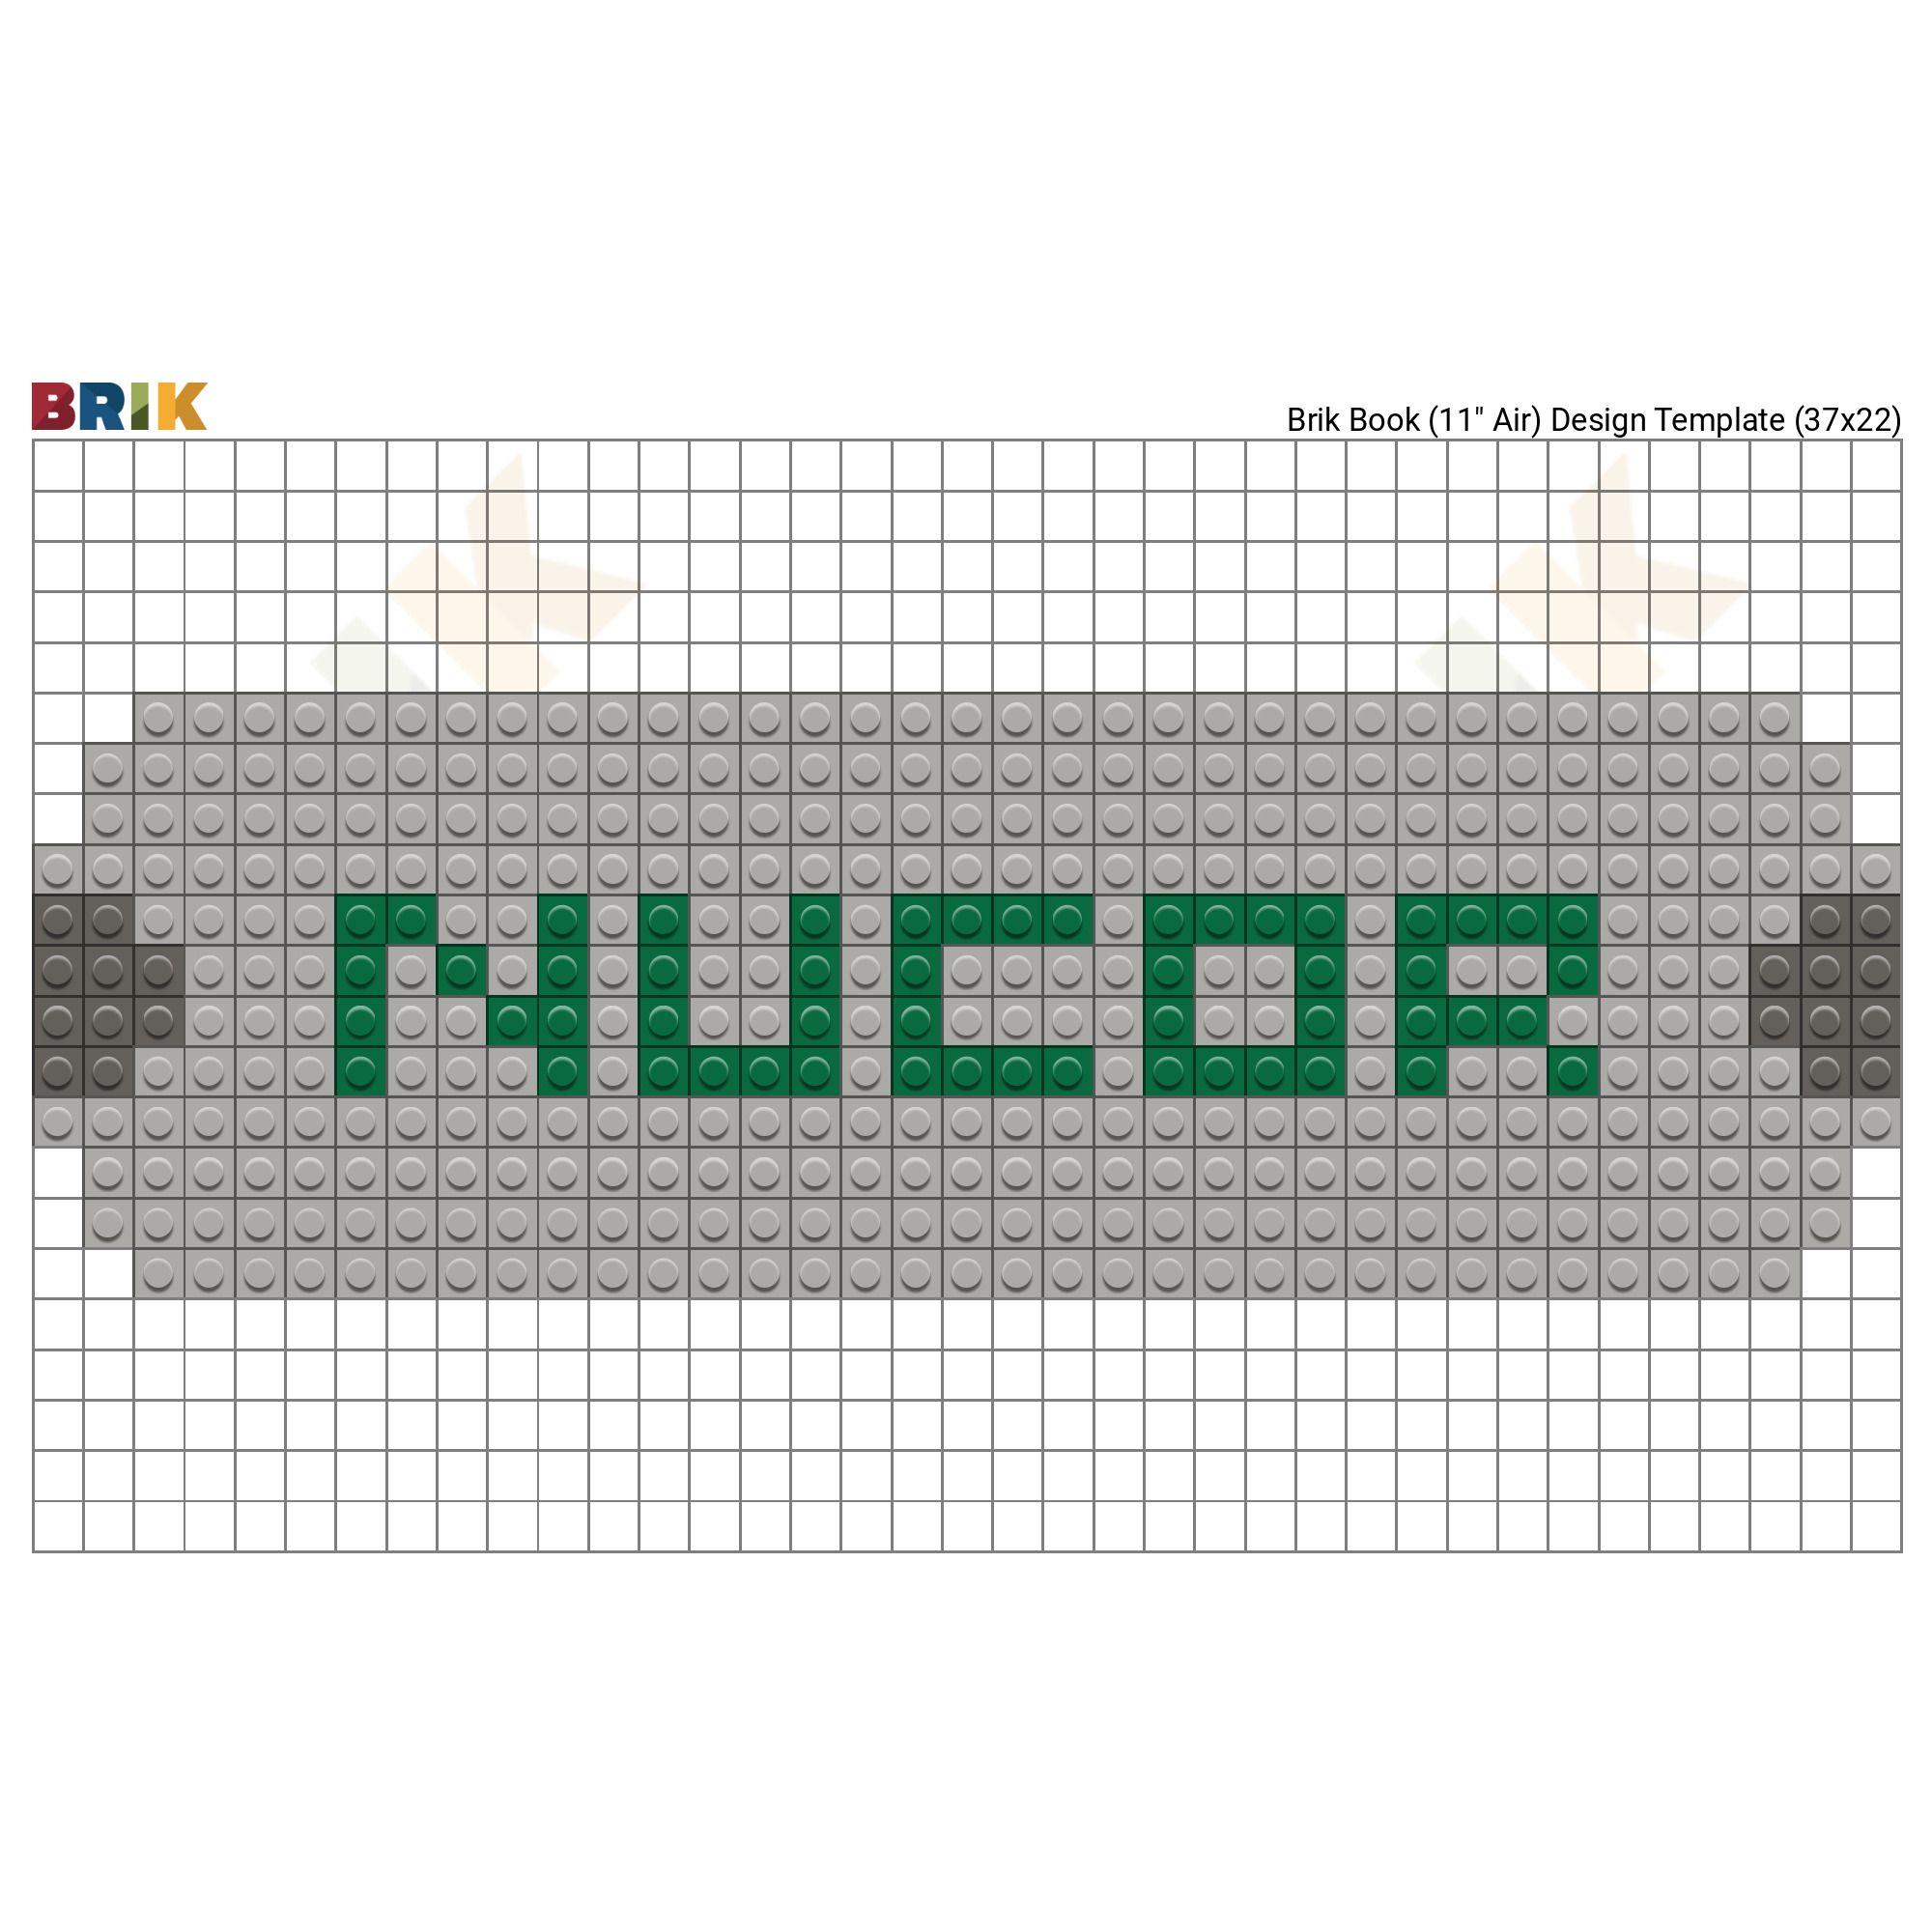 Nucor Logo - Pixel Nucor Corporation Logo